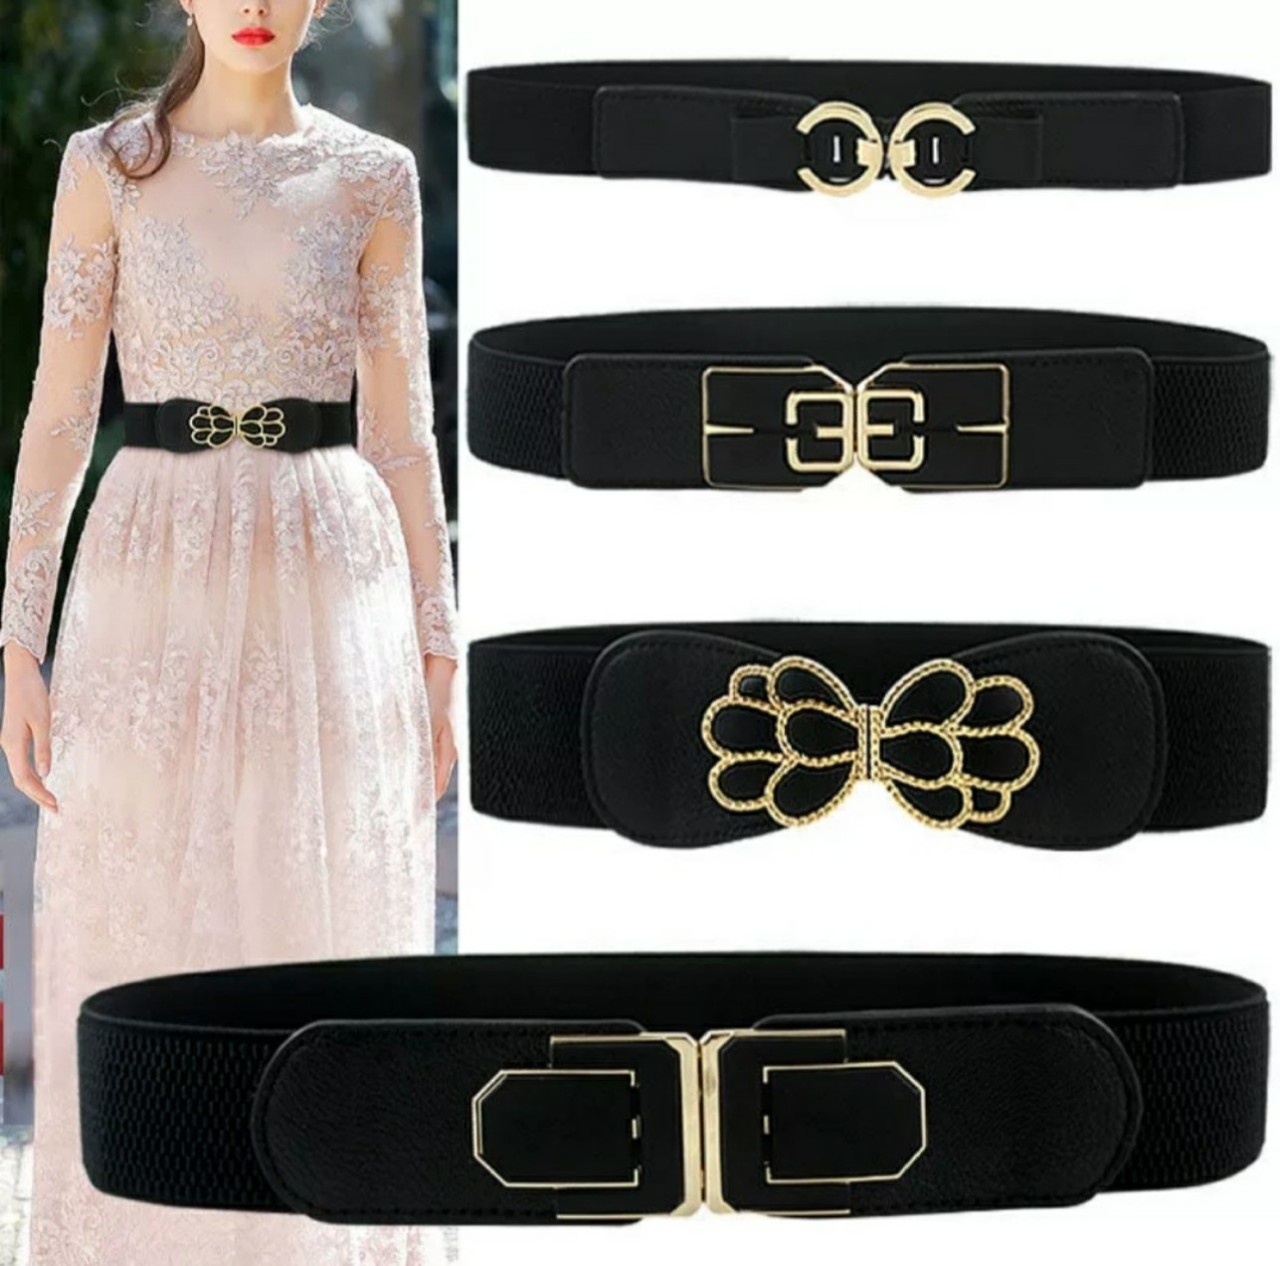 Thắt lưng dây nịt nữ mang đầm bản màu đen đẹp sang trọng thời trang Hàn Quốc dona21101104